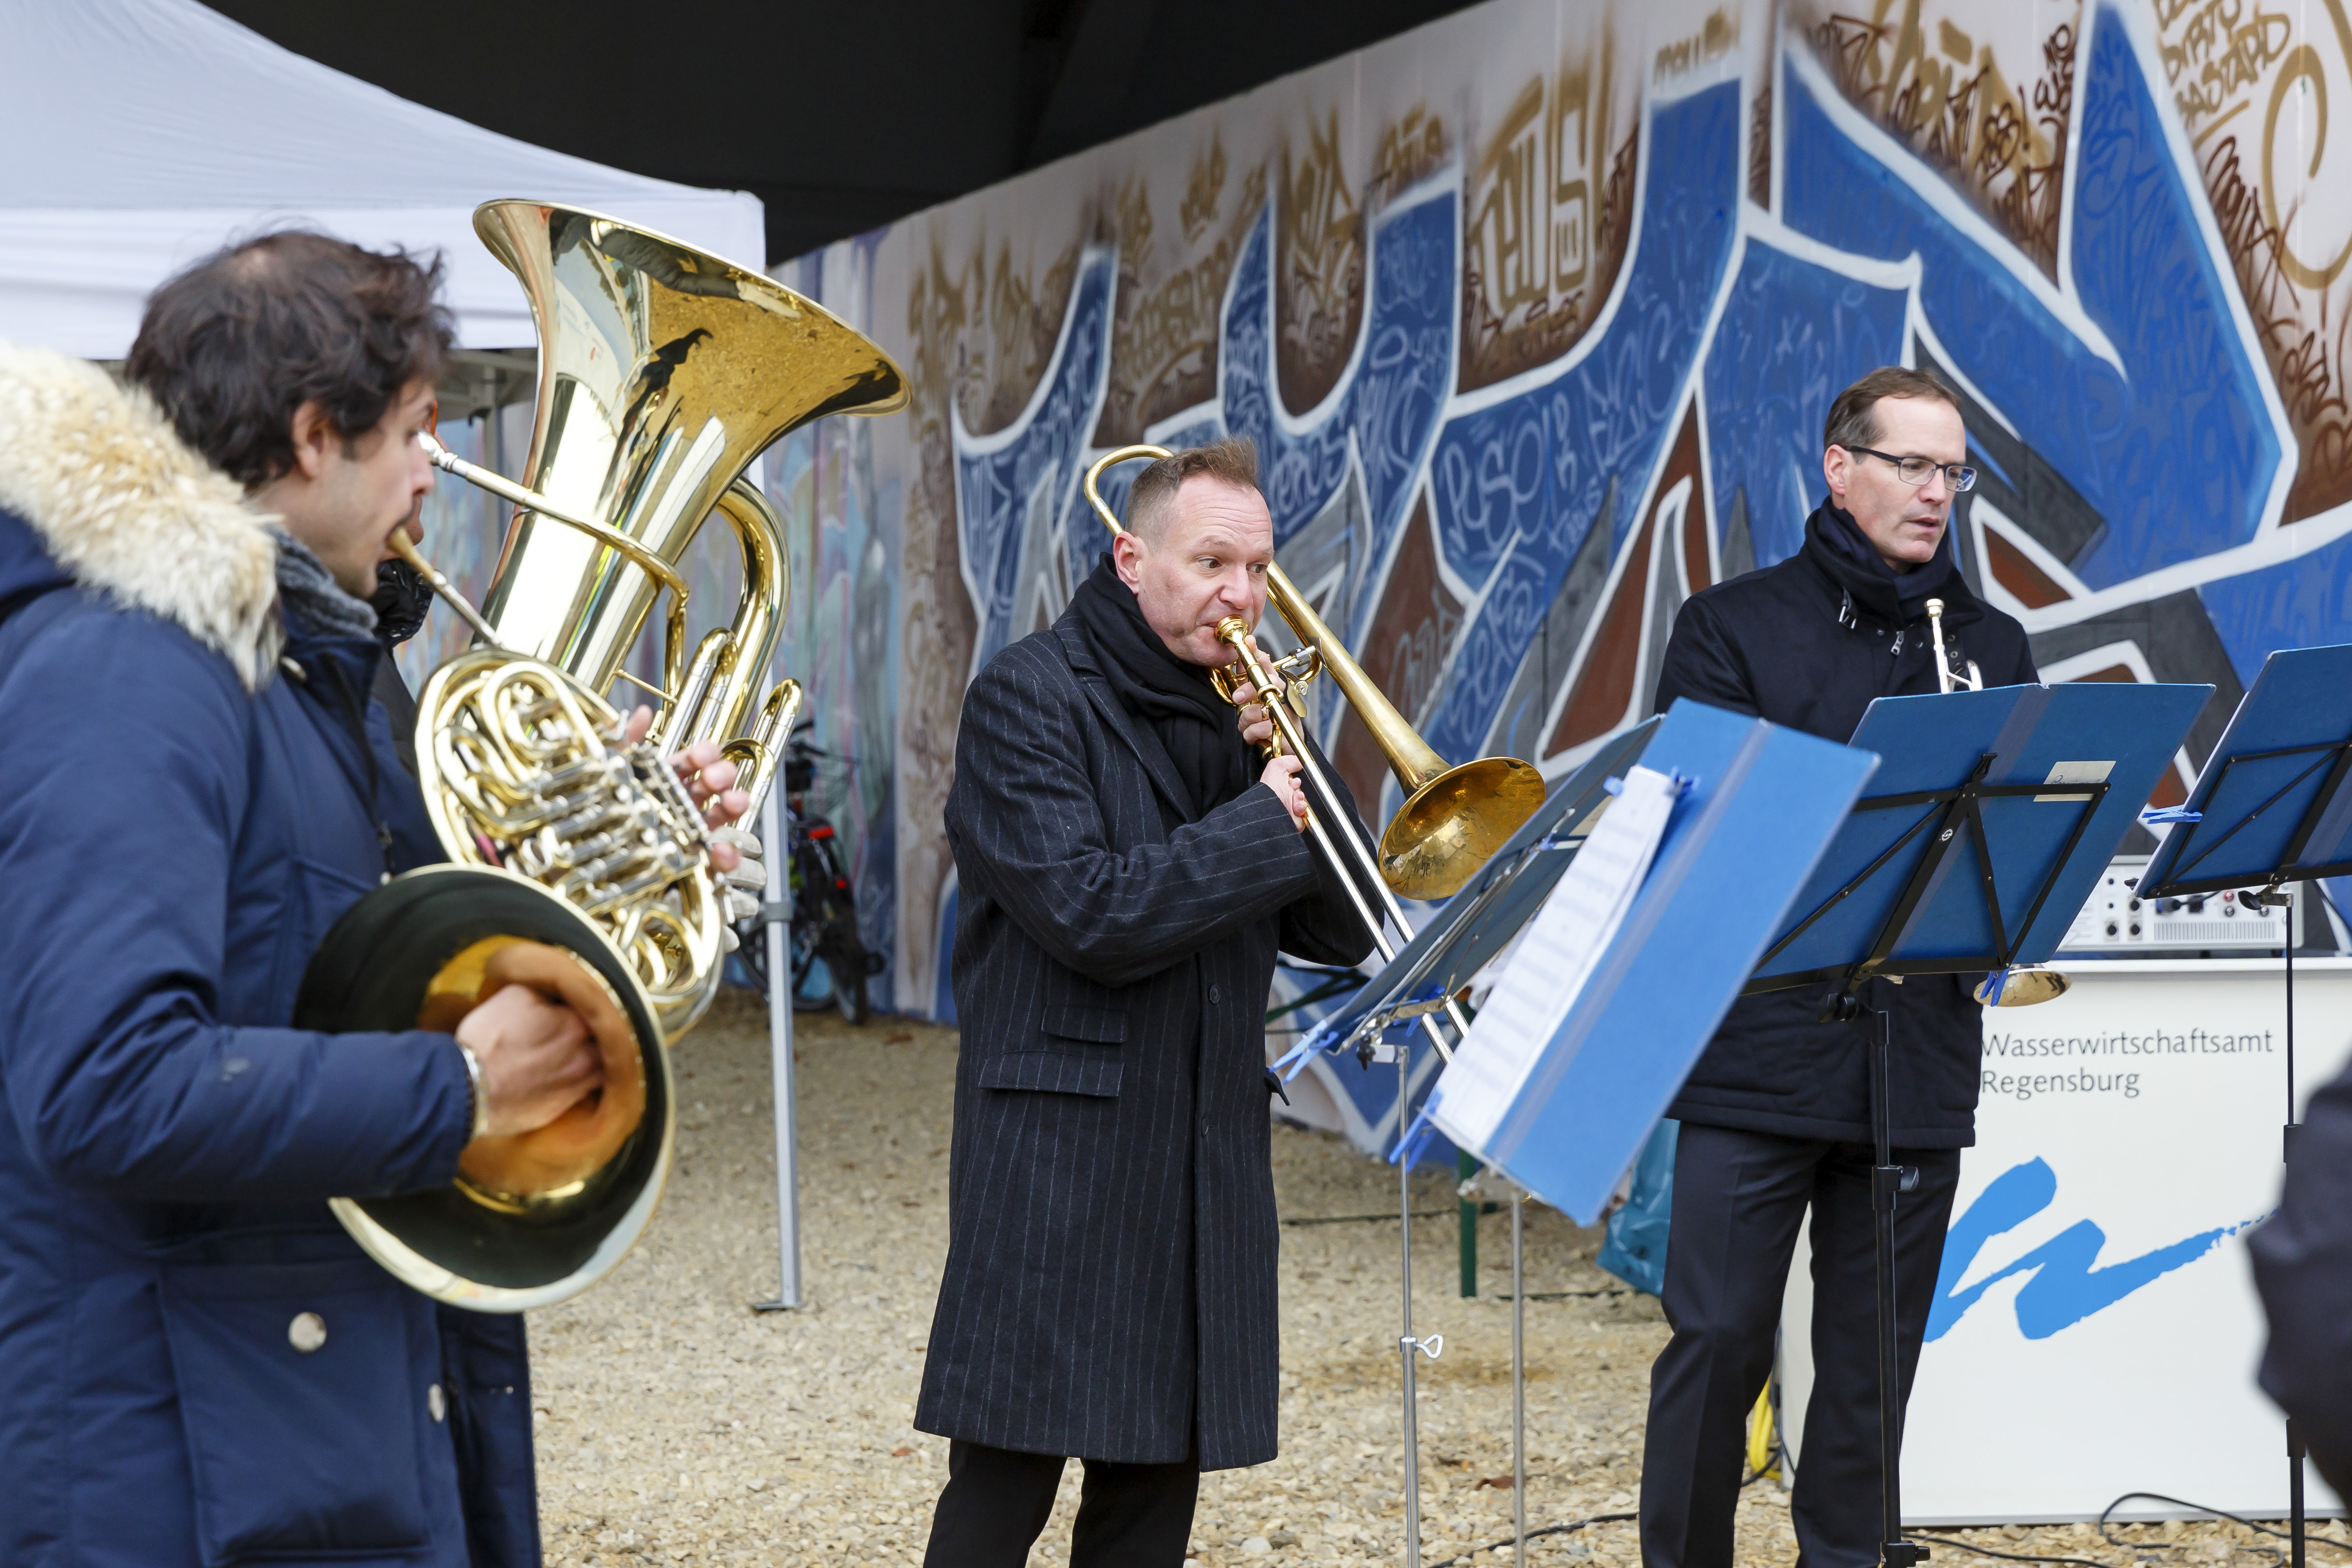 Drei Musikanten des Philharmonischen Orchester Regensburg mit Blechblasinstrumenten und Notenständern. Im Hintergrund das mit Graffiti besprühte Widerlager der Nibelungenbrücke.